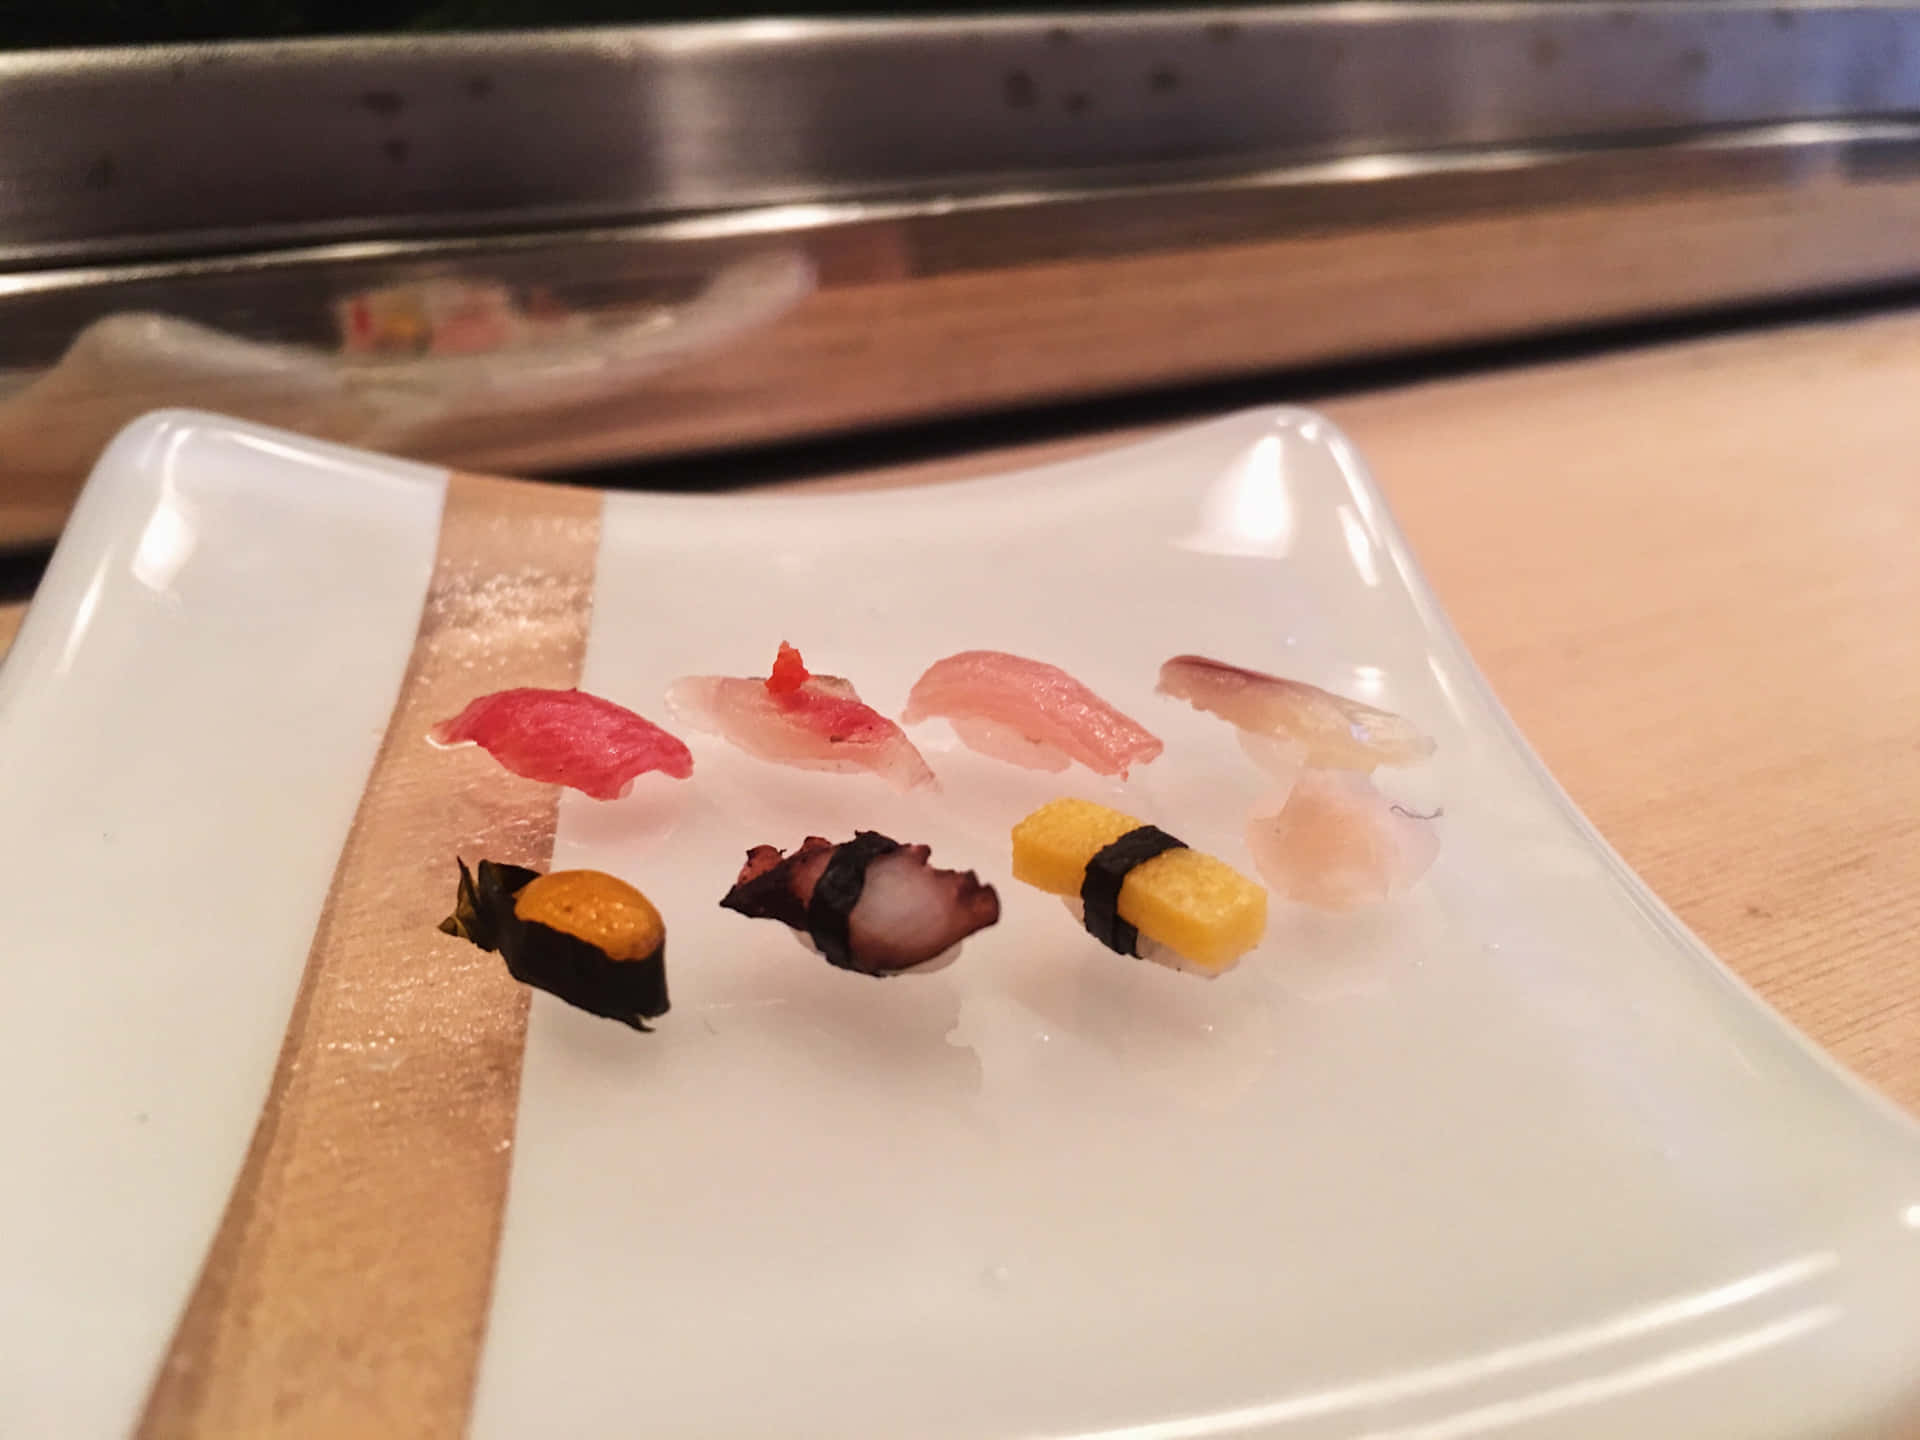 Sushi5120 X 3840 Baggrund.